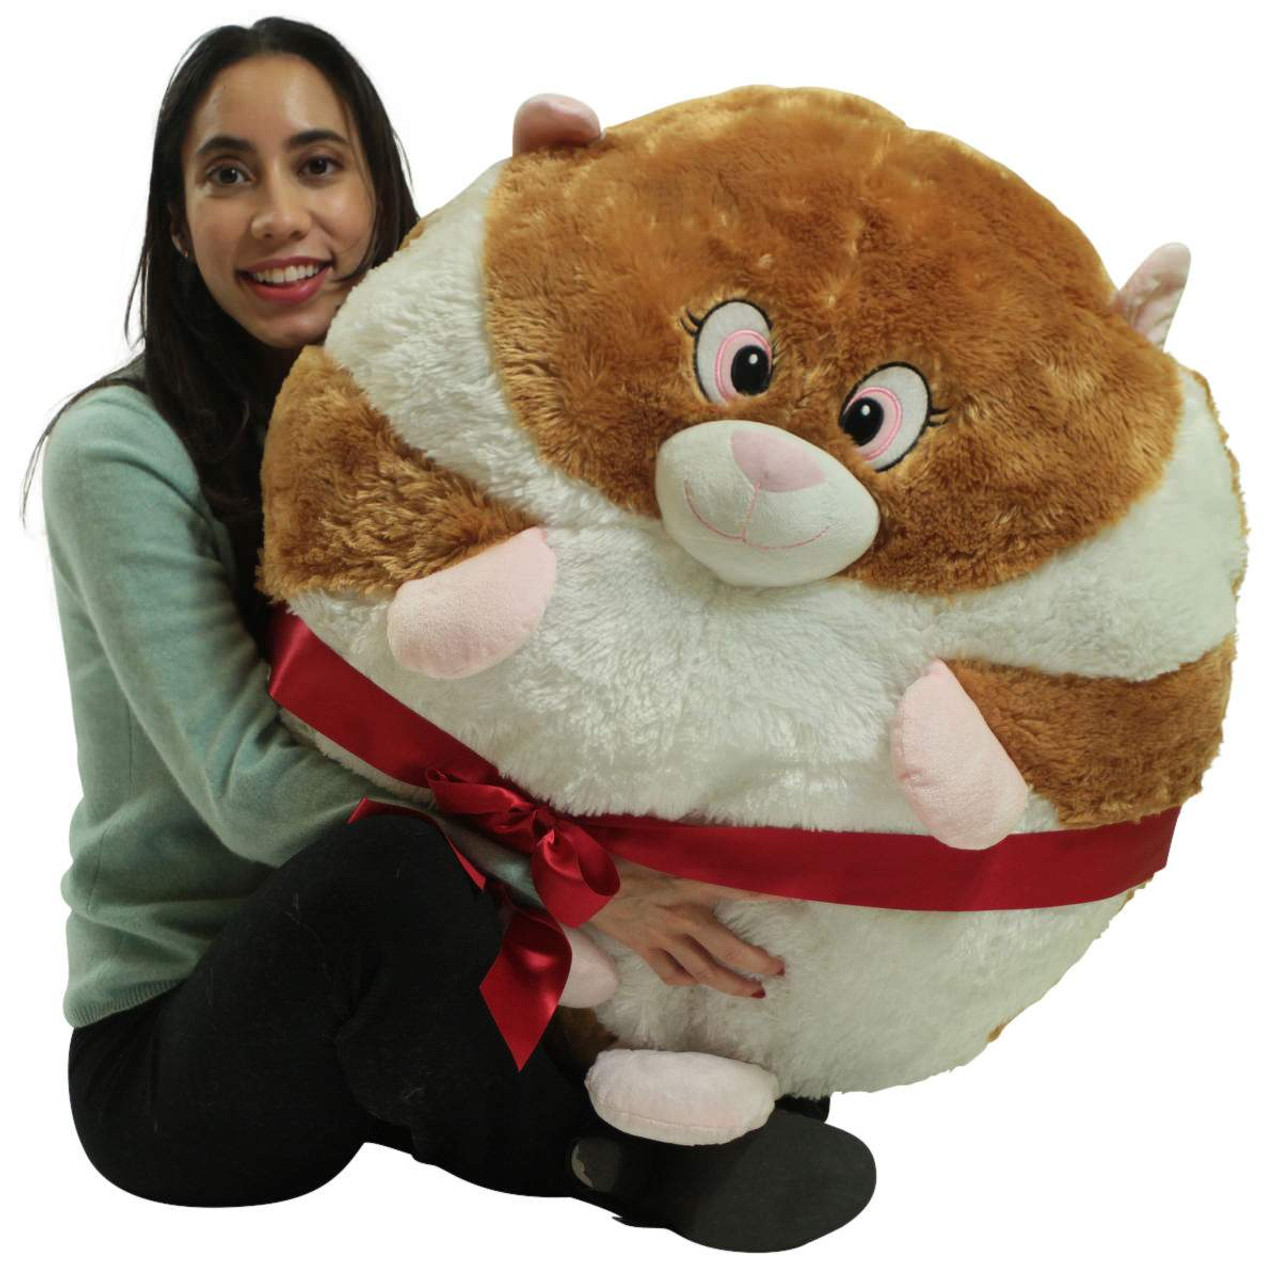 giant stuffed hamster